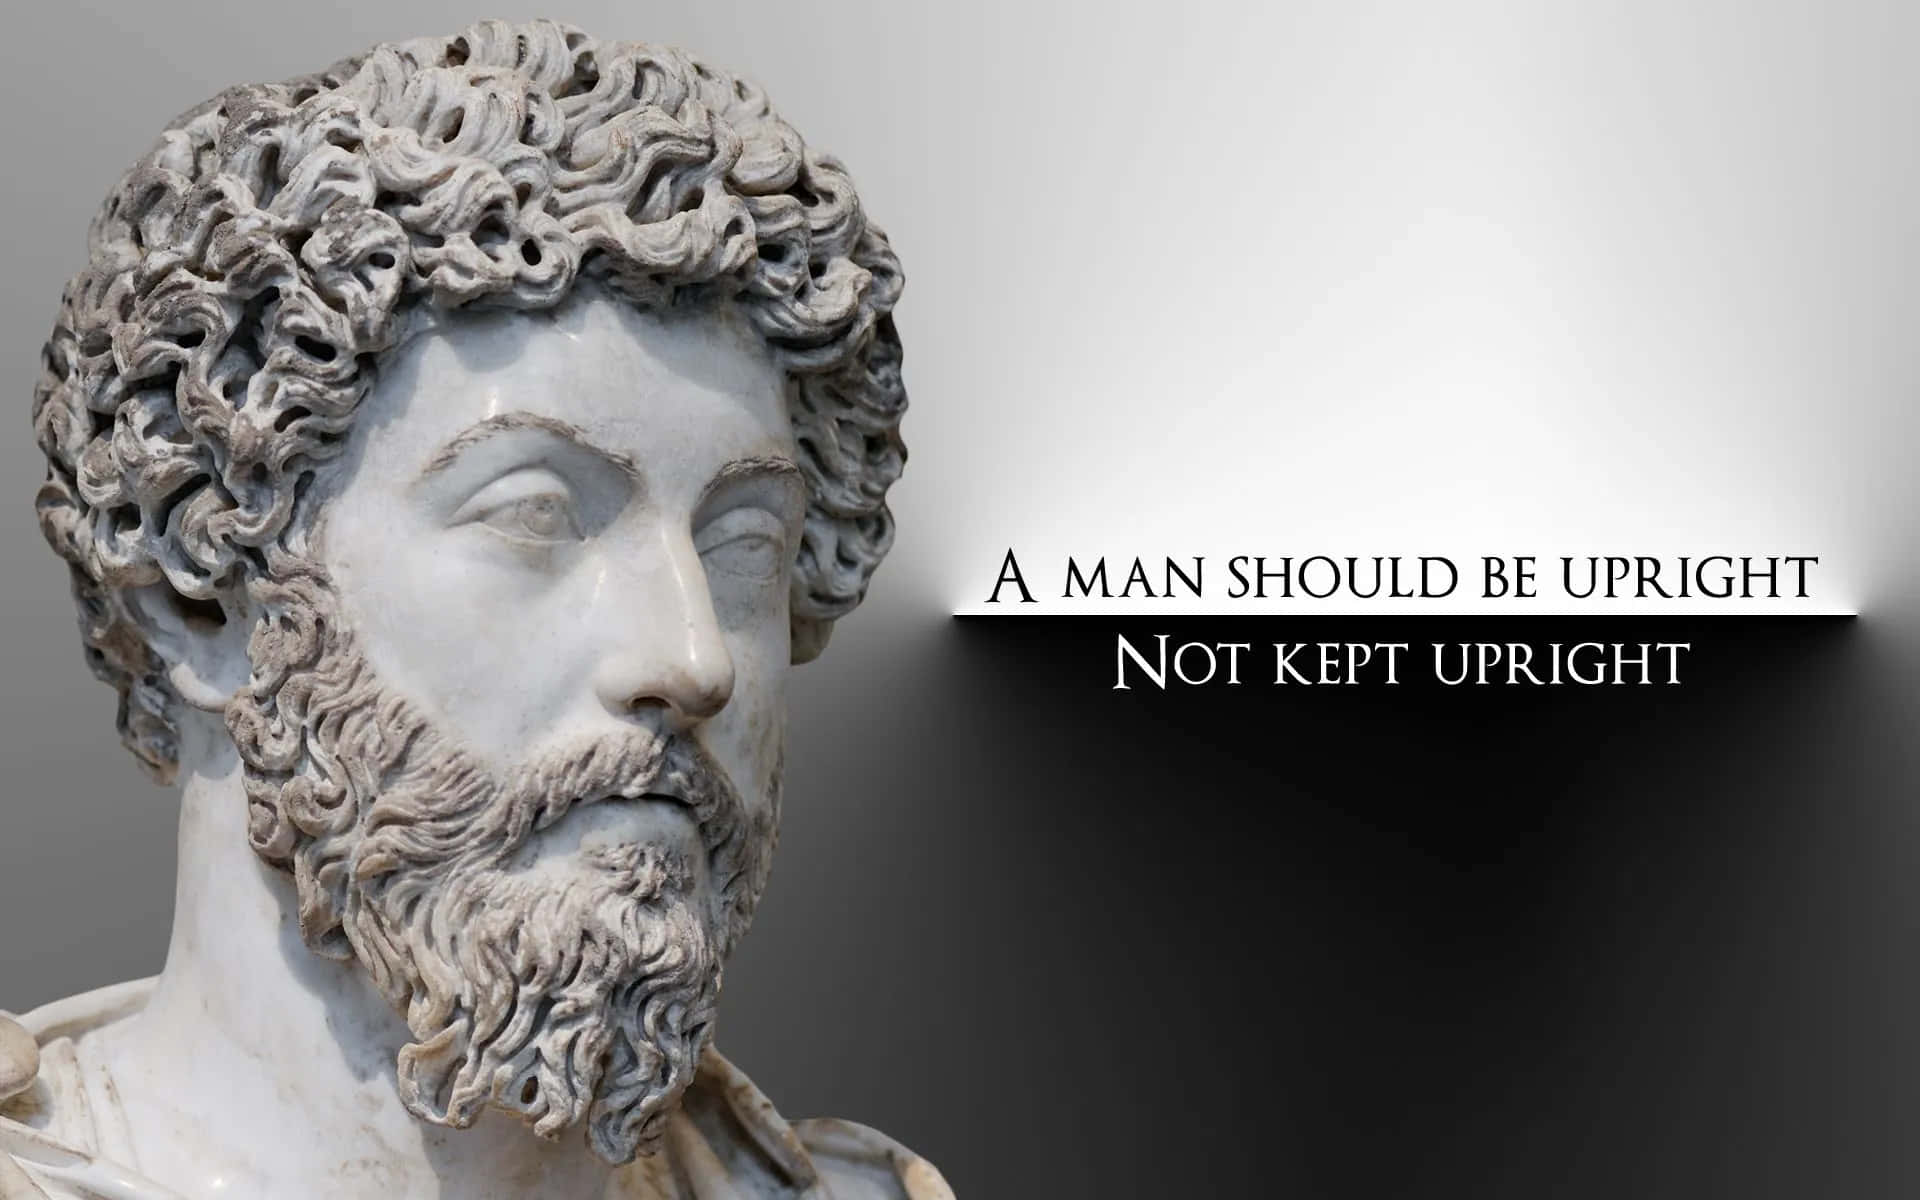 Marcus Aurelius Bustwith Quote Wallpaper